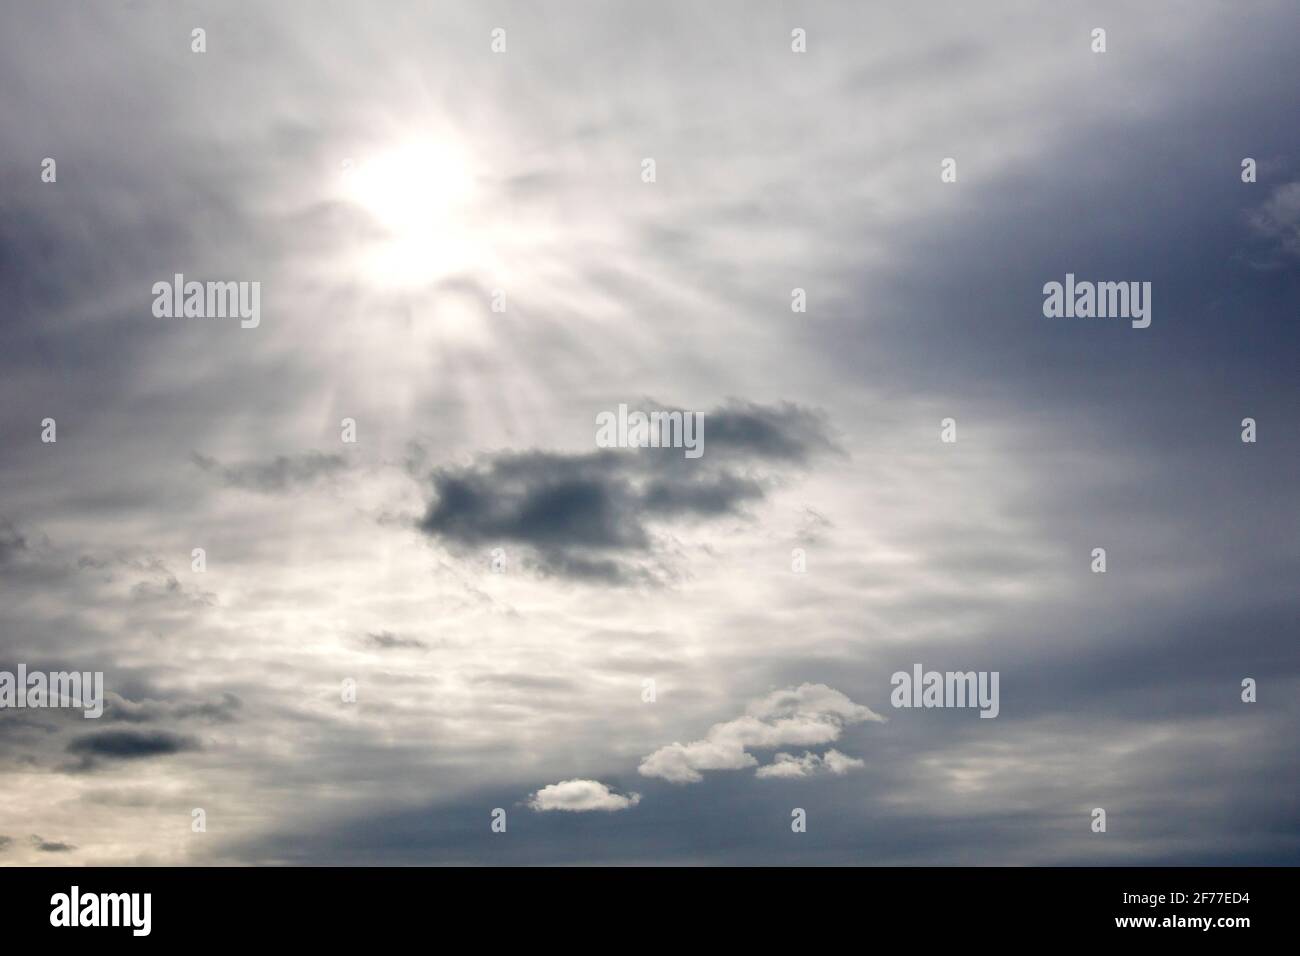 Ein bedecktem Himmel, die Wolke dünn genug, damit die Sonne schwach durchscheinen kann und einige Wolken auf niedrigerem Niveau erleuchtet. Stockfoto